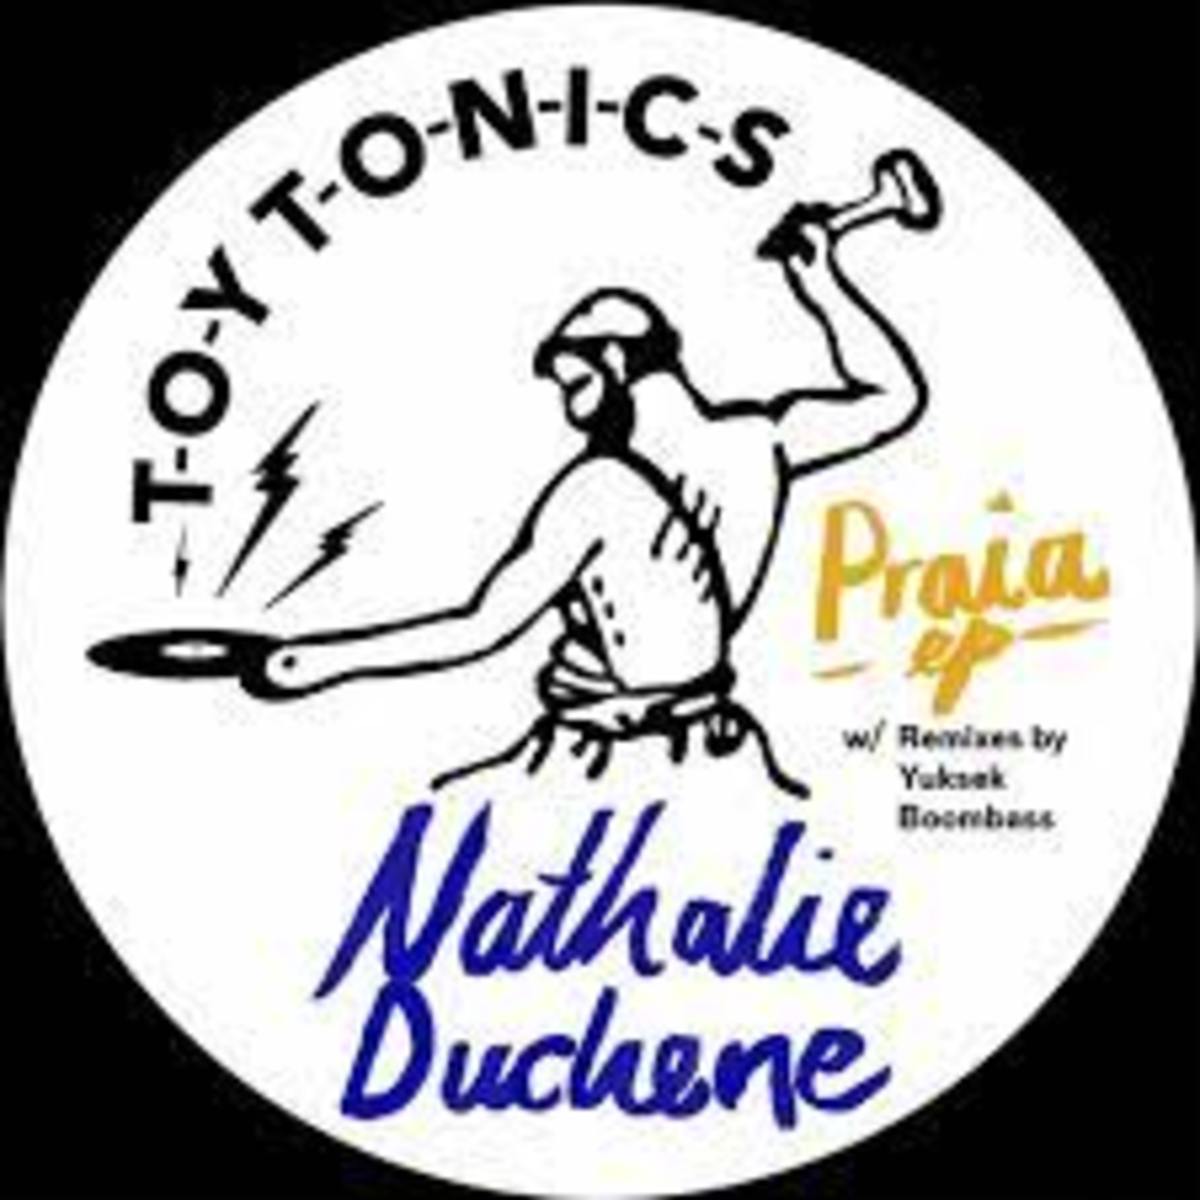 Nathalie Duchene - Praia (Yuksek Remix)